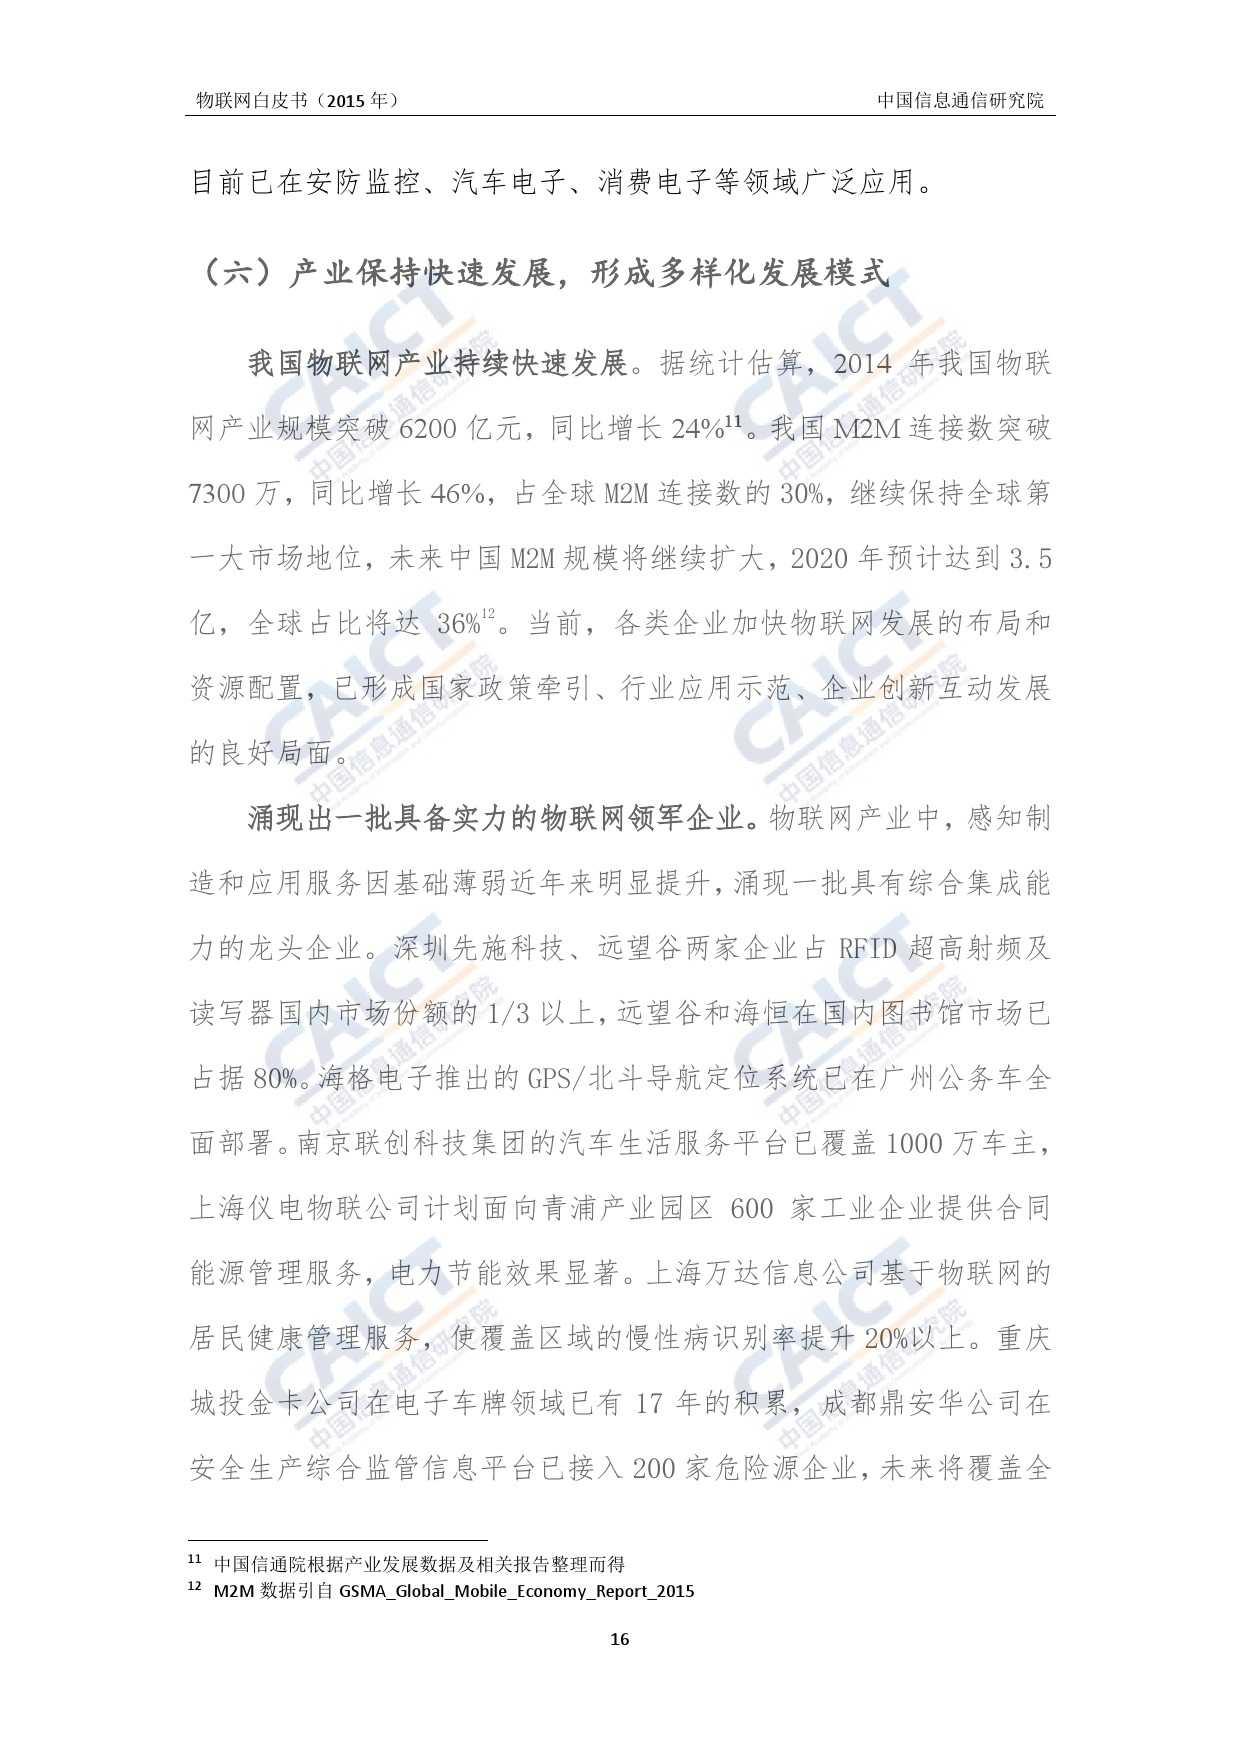 中国信息通信研究院：2015年物联网白皮书_000020